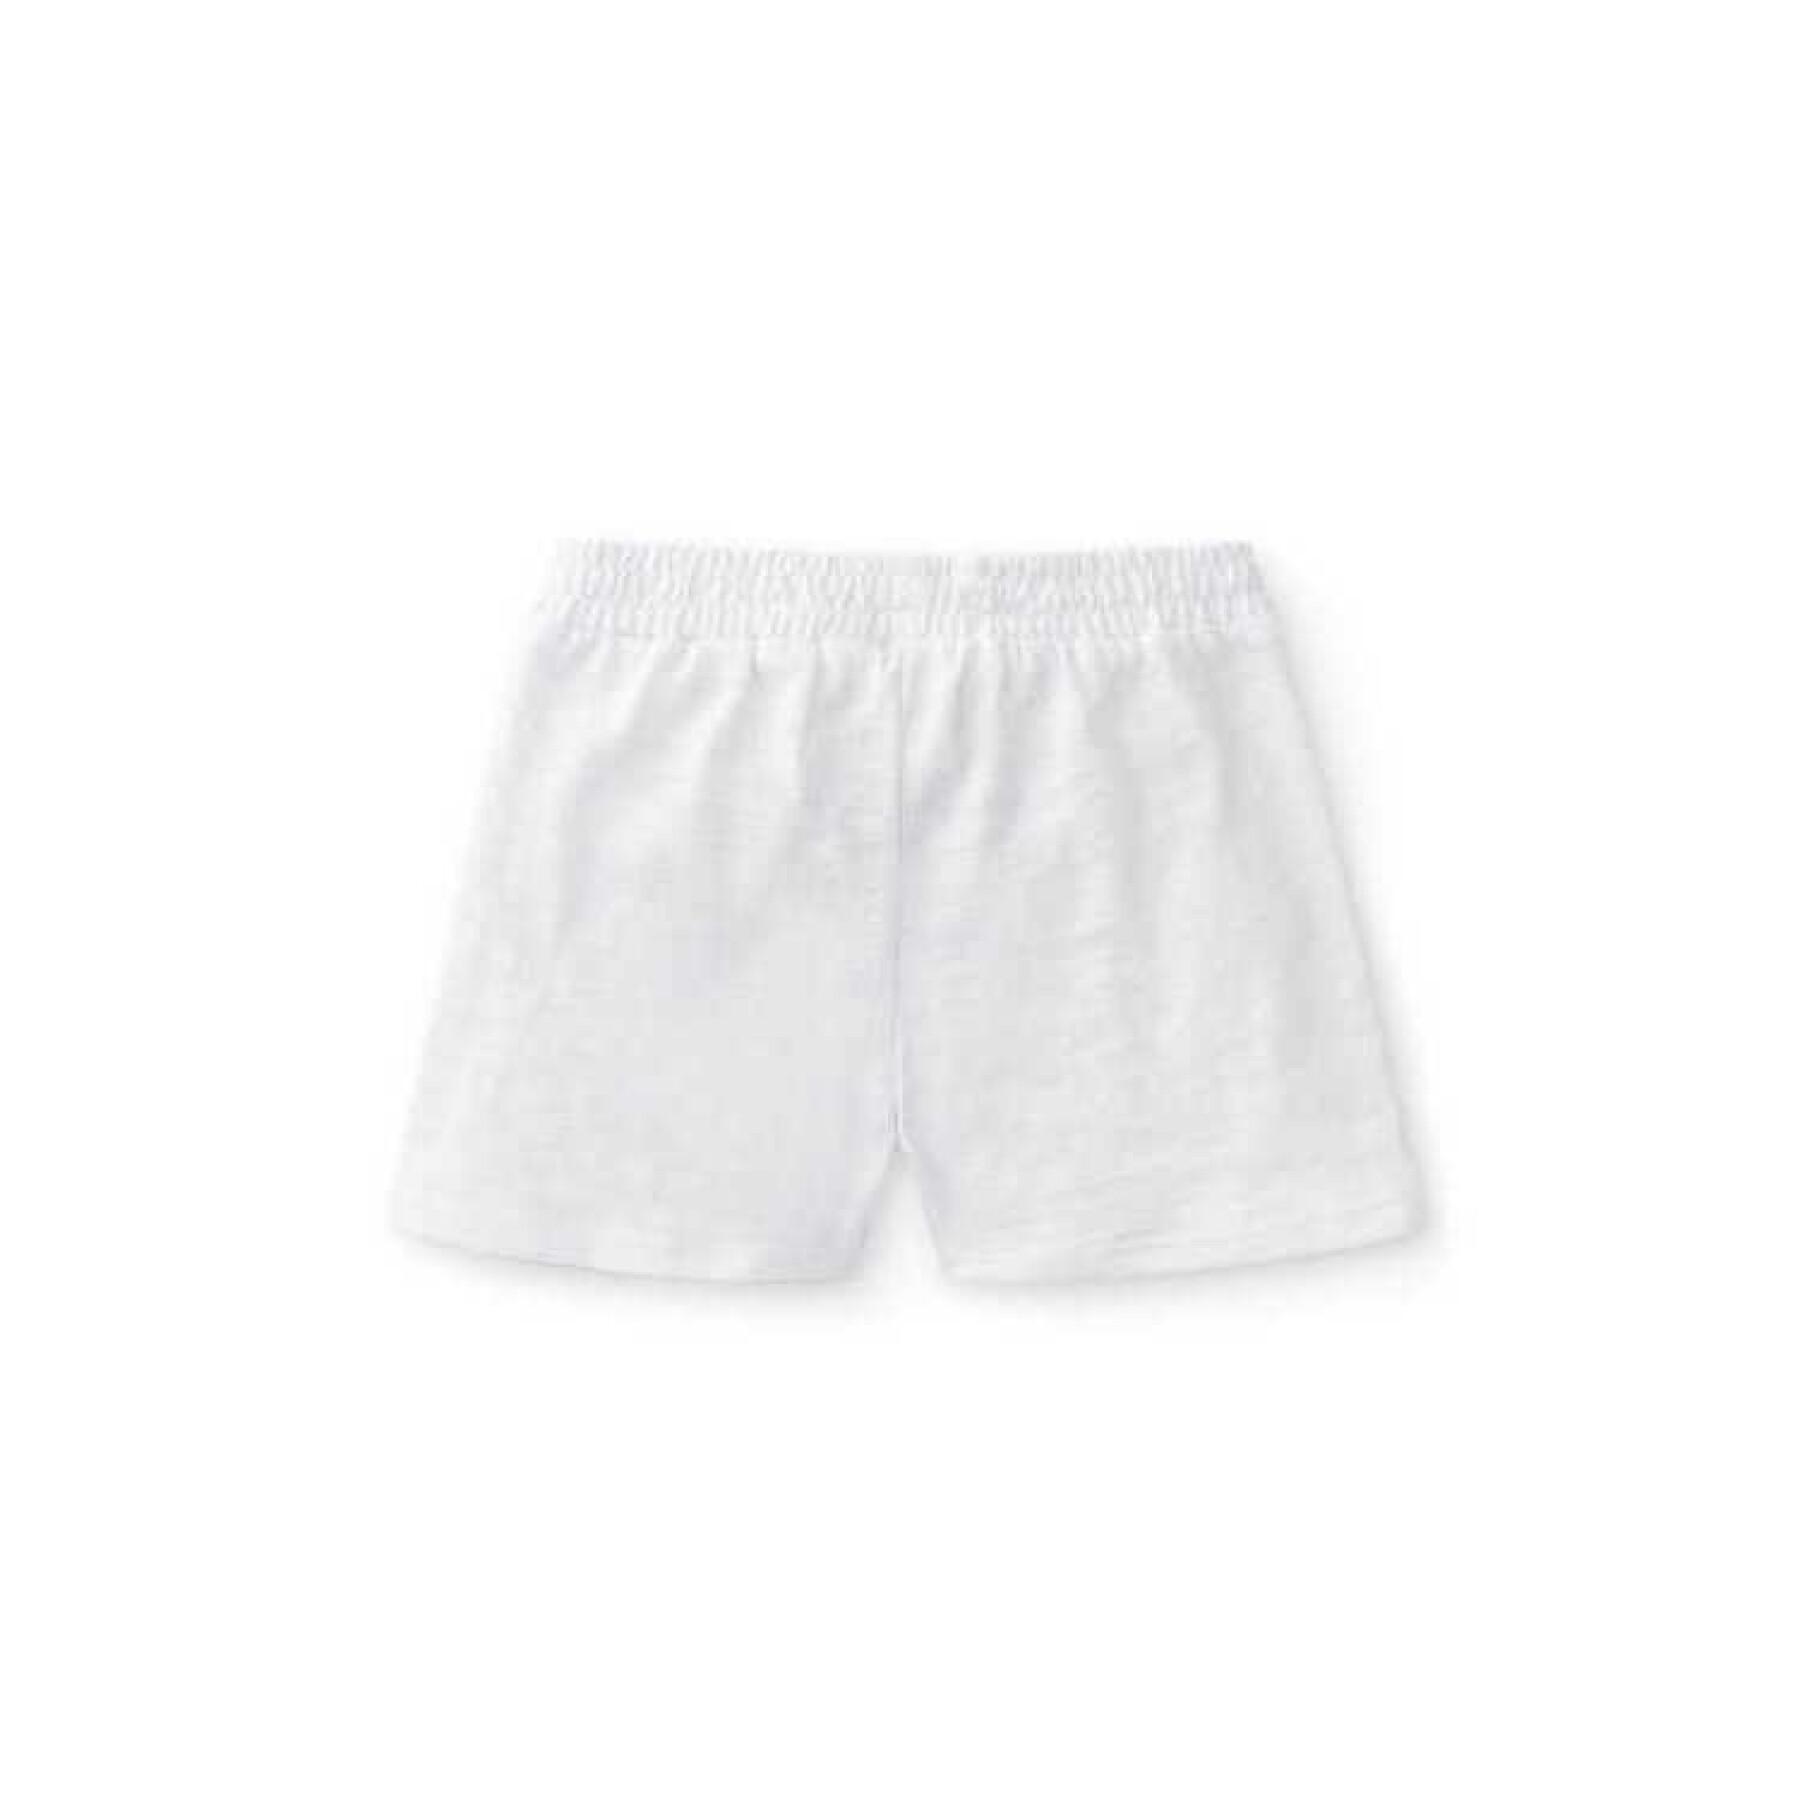 Baby shorts Charanga Gistosa